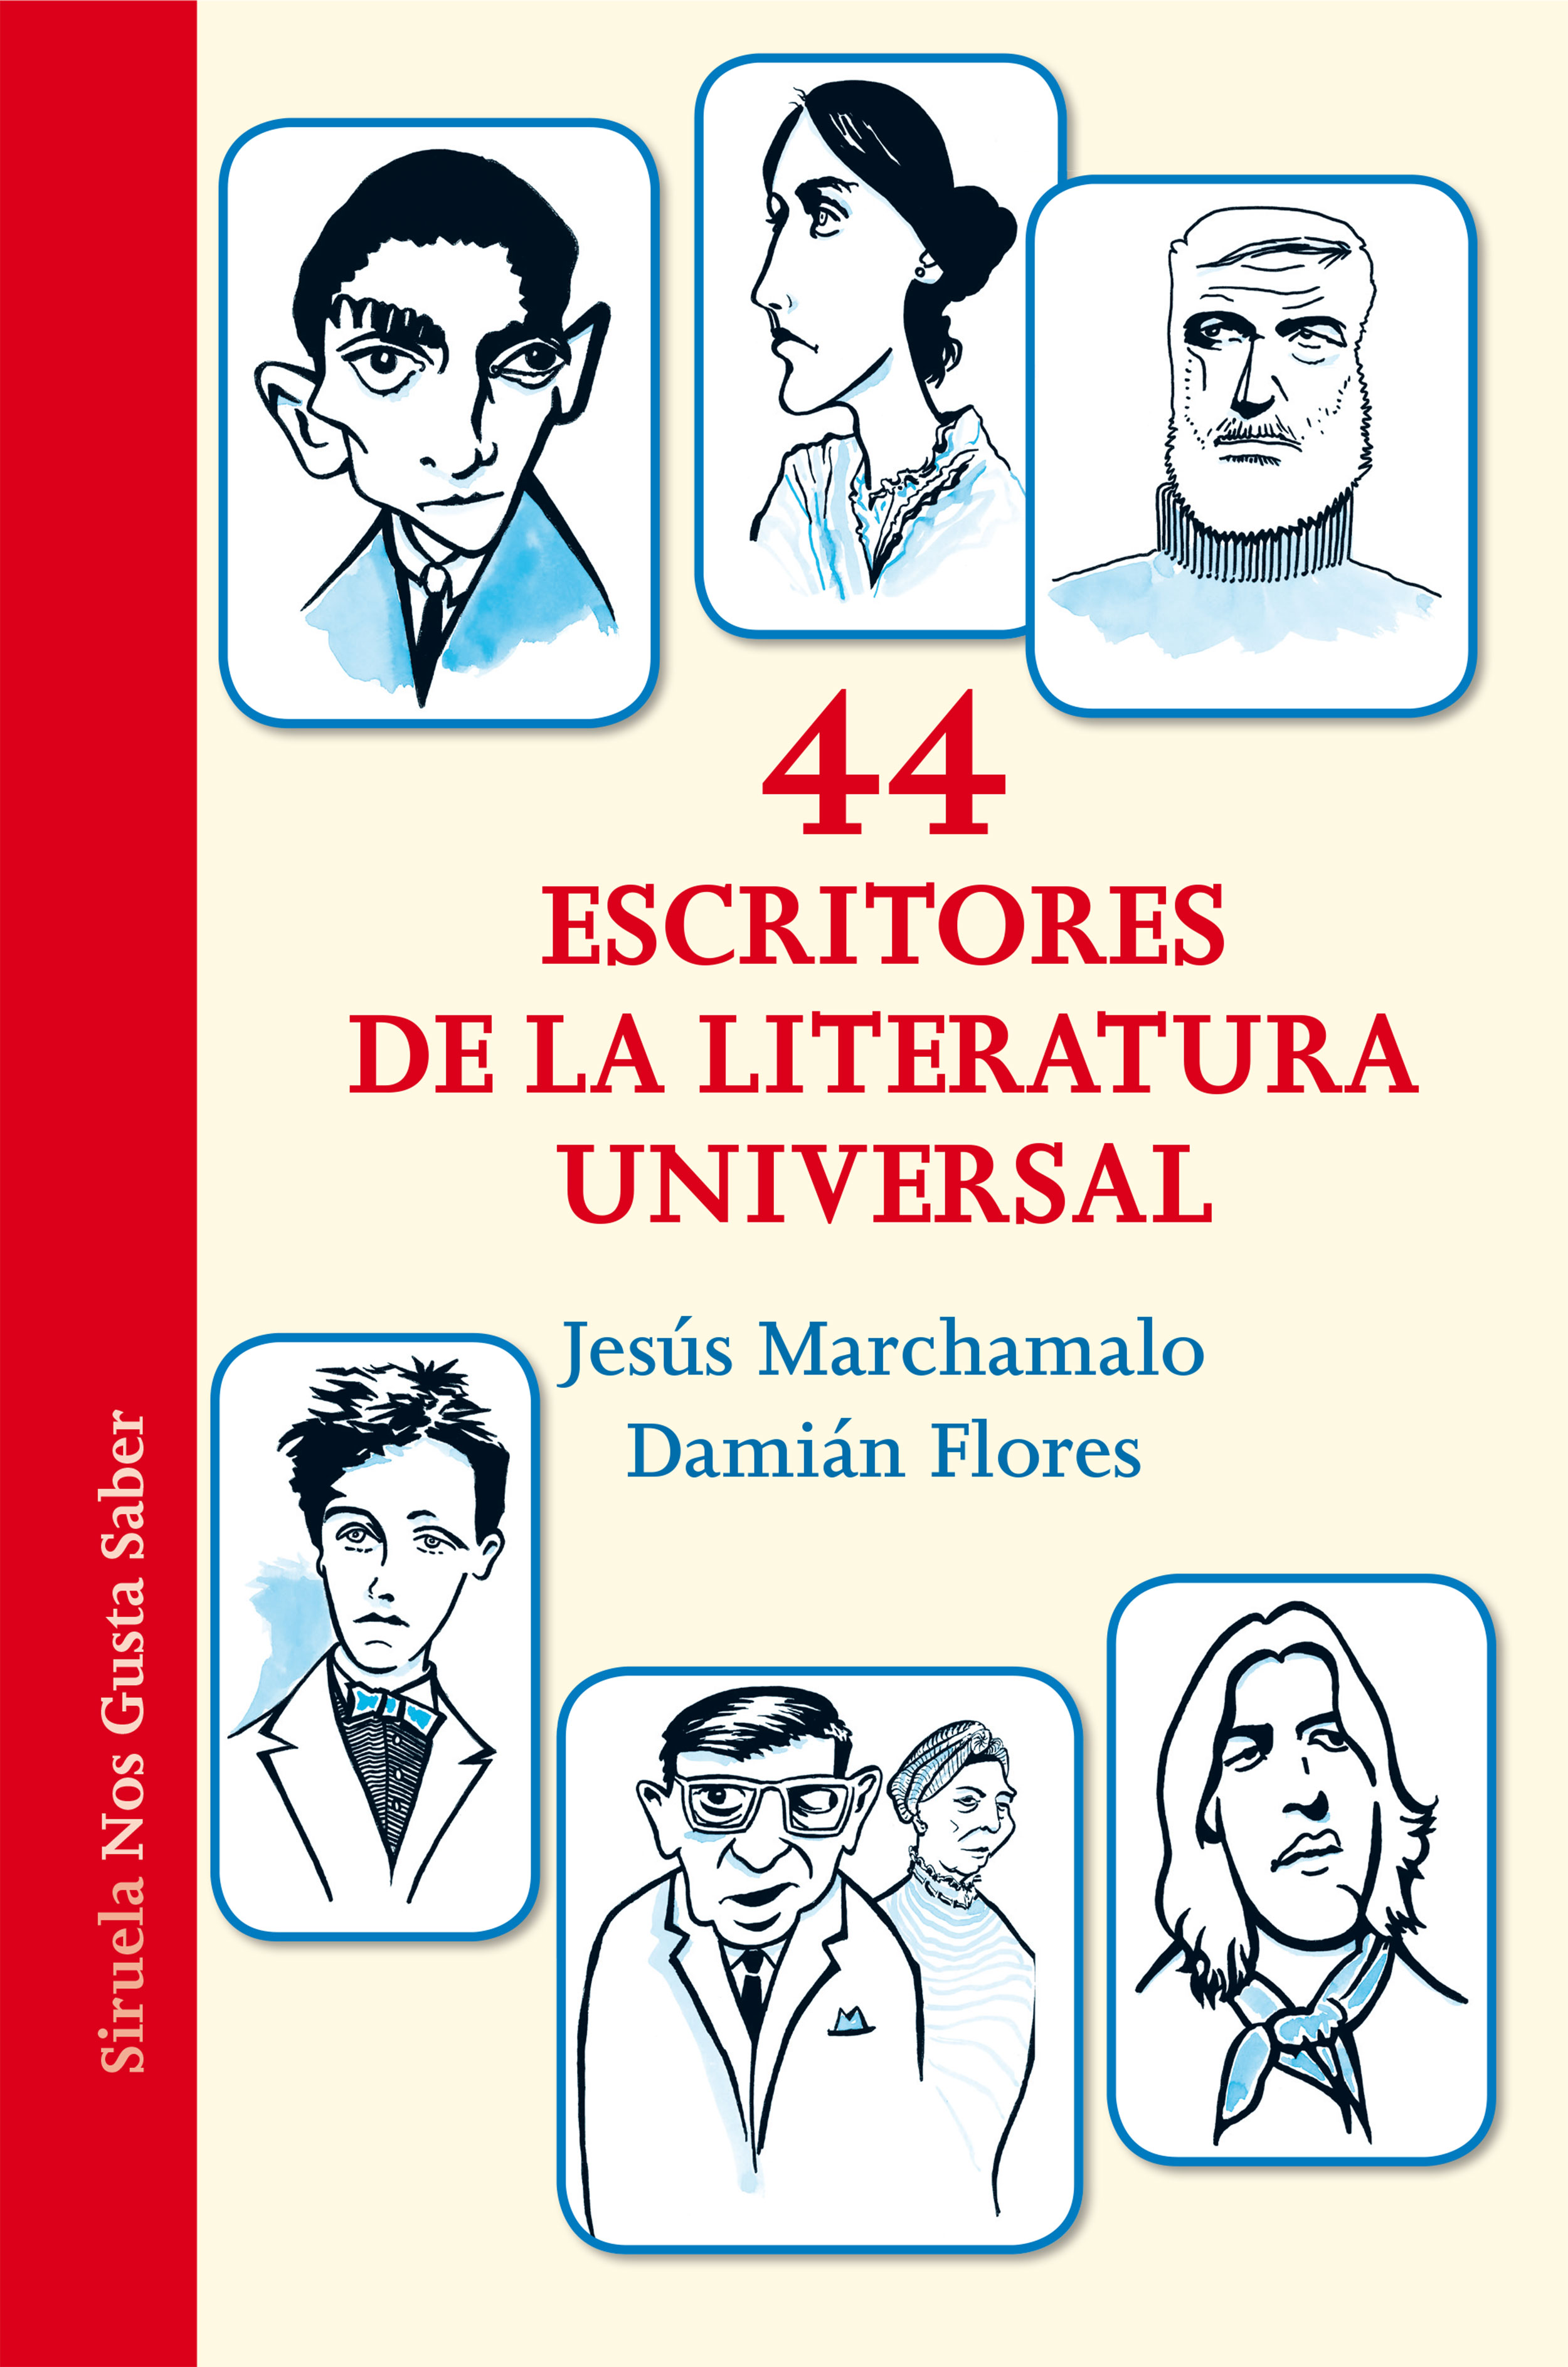 Alfombra Elástico Autonomía 44 escritores de la literatura universal | Katakrak - Librería, Cafetería,  Editorial, cooperativa